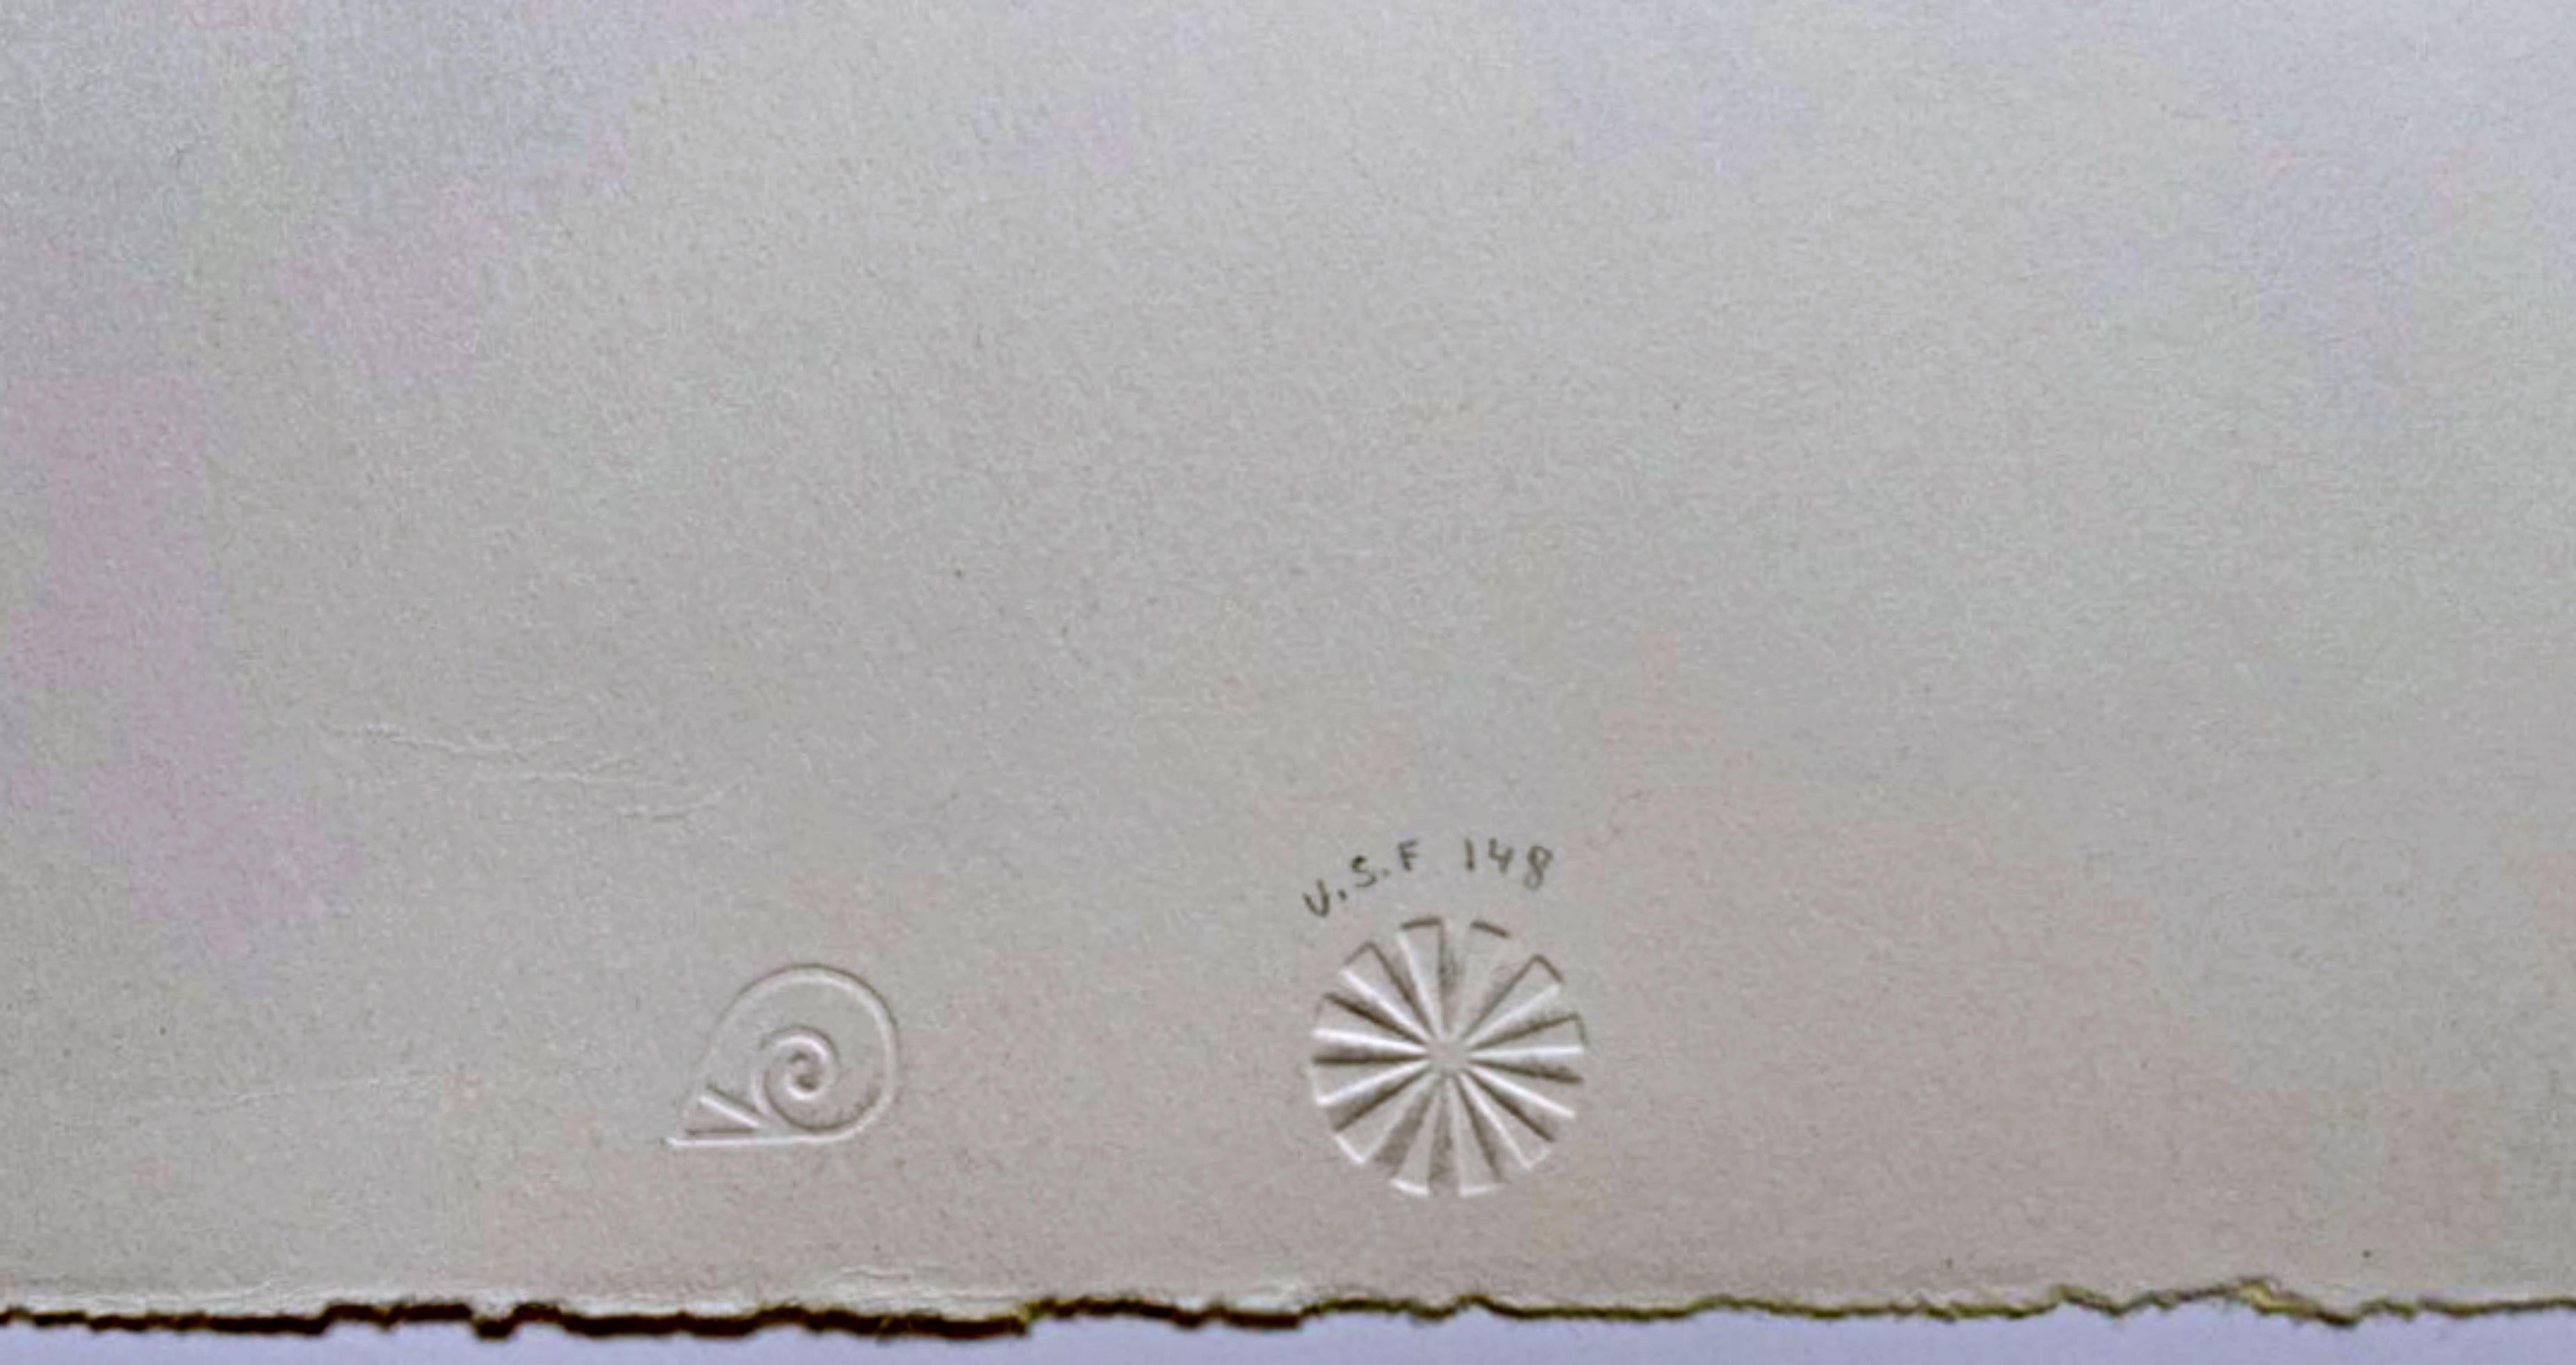 James Rosenquist
Art Gallery, aus dem Nachlass von Nina Castelli und der Collection'S von Ileana Sonnabend (Glenn, 41), 1971
Farblithographie auf Rives BFK Papier
30 × 22 1/2 Zoll
Ausgabe 10/30
Mit Bleistift signiert, nummeriert 10/30 und datiert